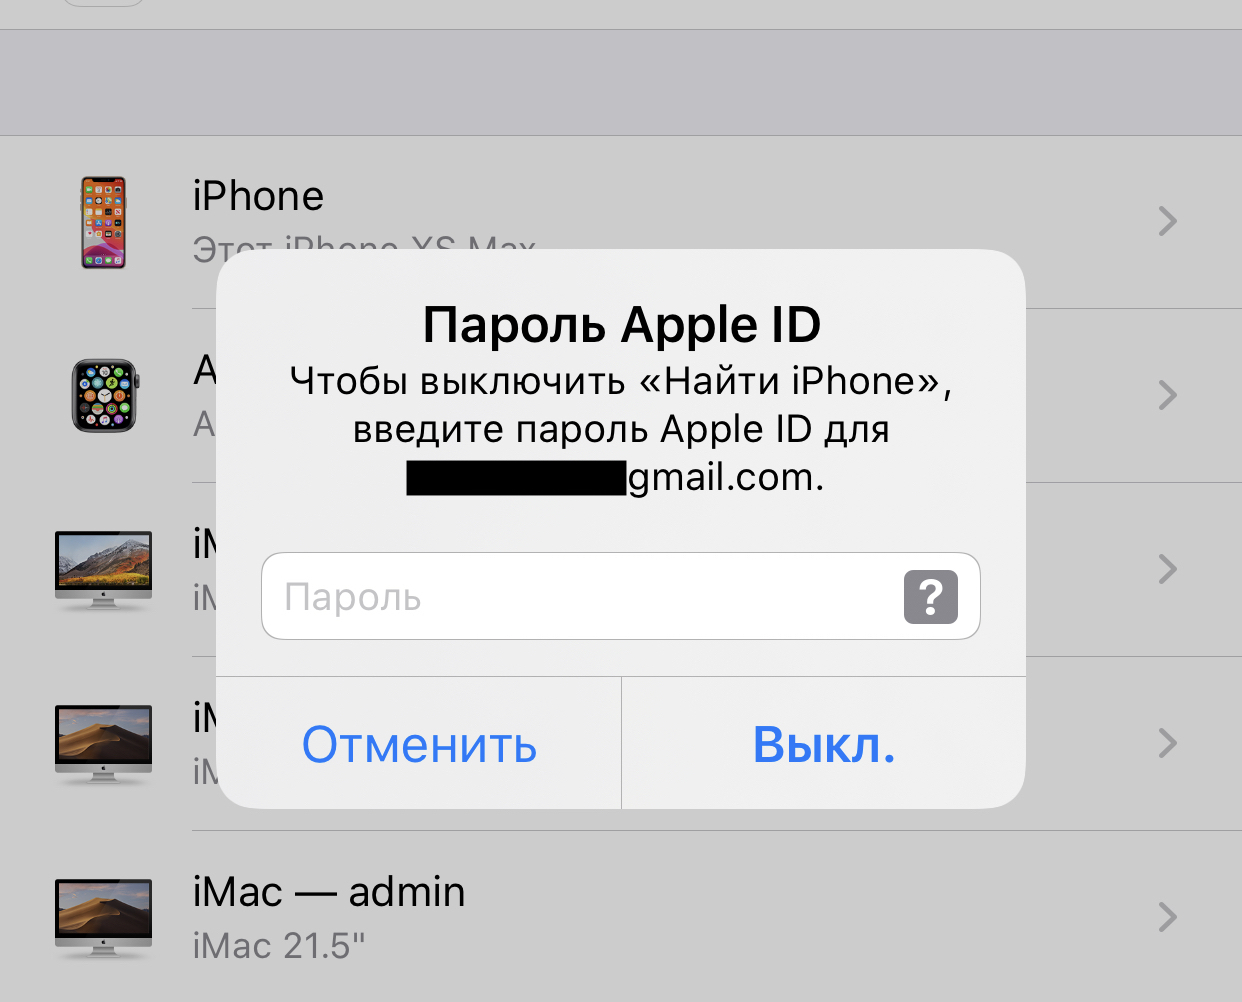 Appel id. Идентификатор Apple ID что это. Что такое айди на айфоне. Пользователи Apple ID. Apple ID привязка карты.